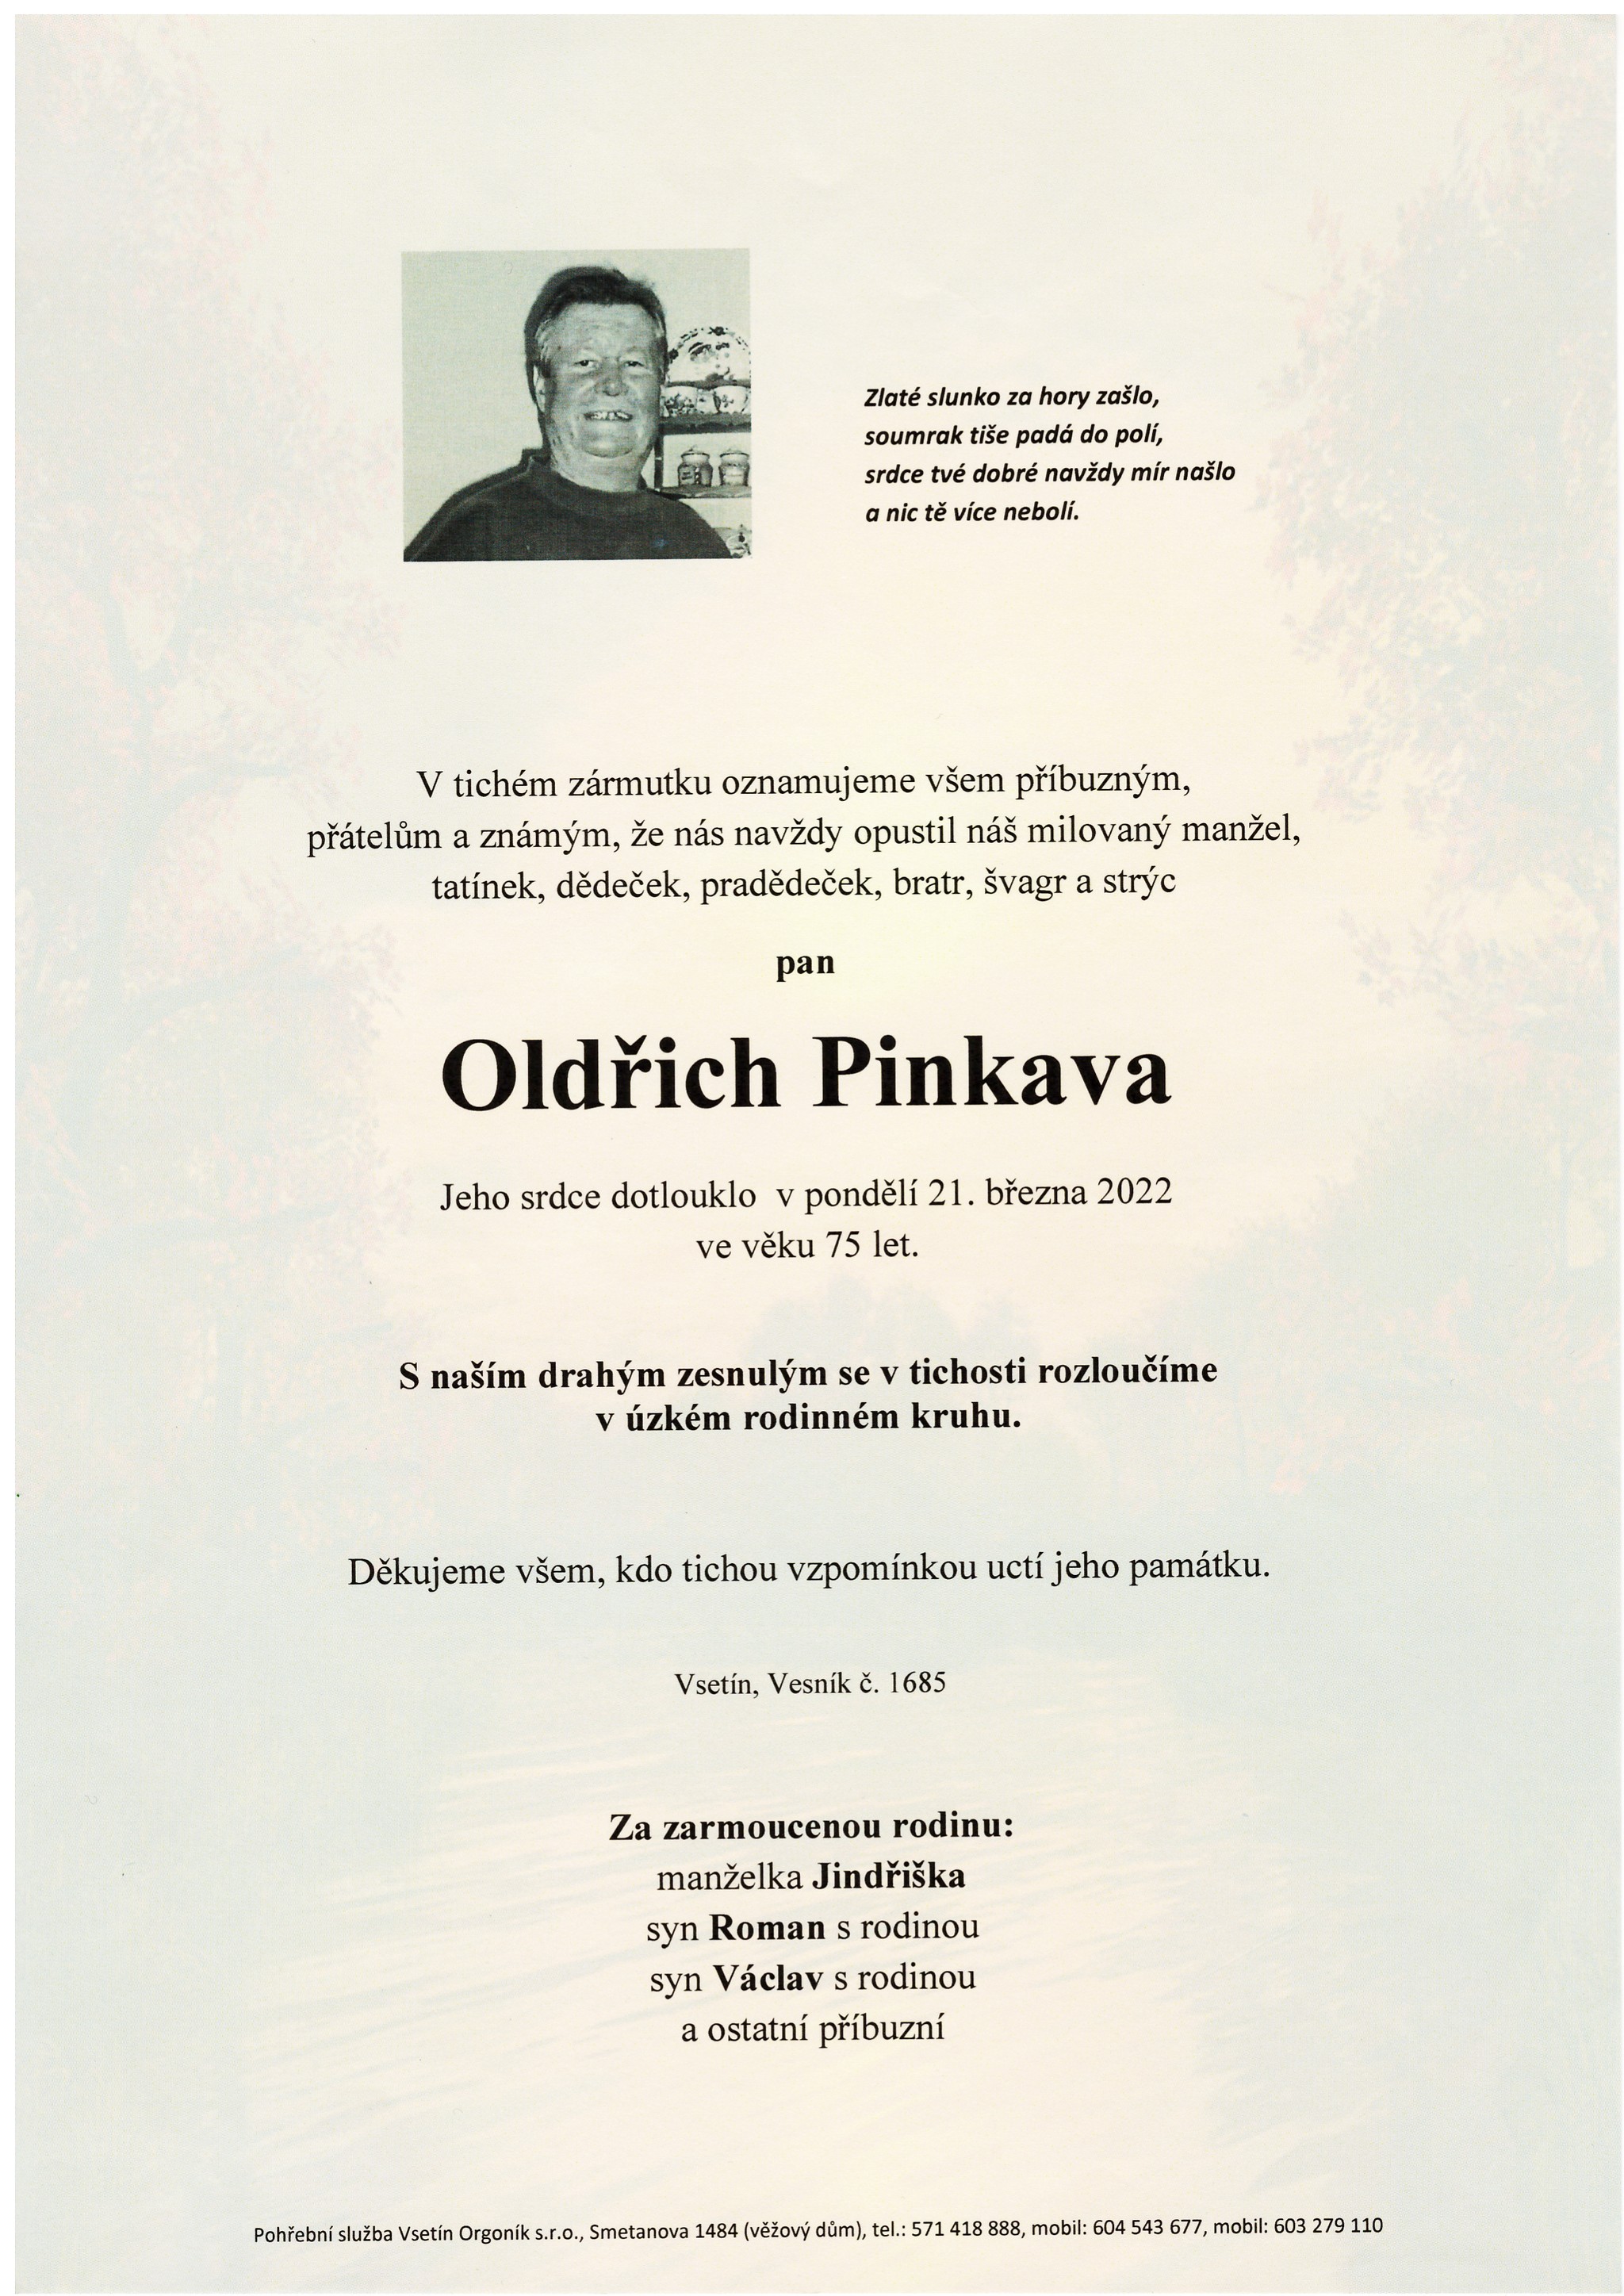 Oldřich Pinkava